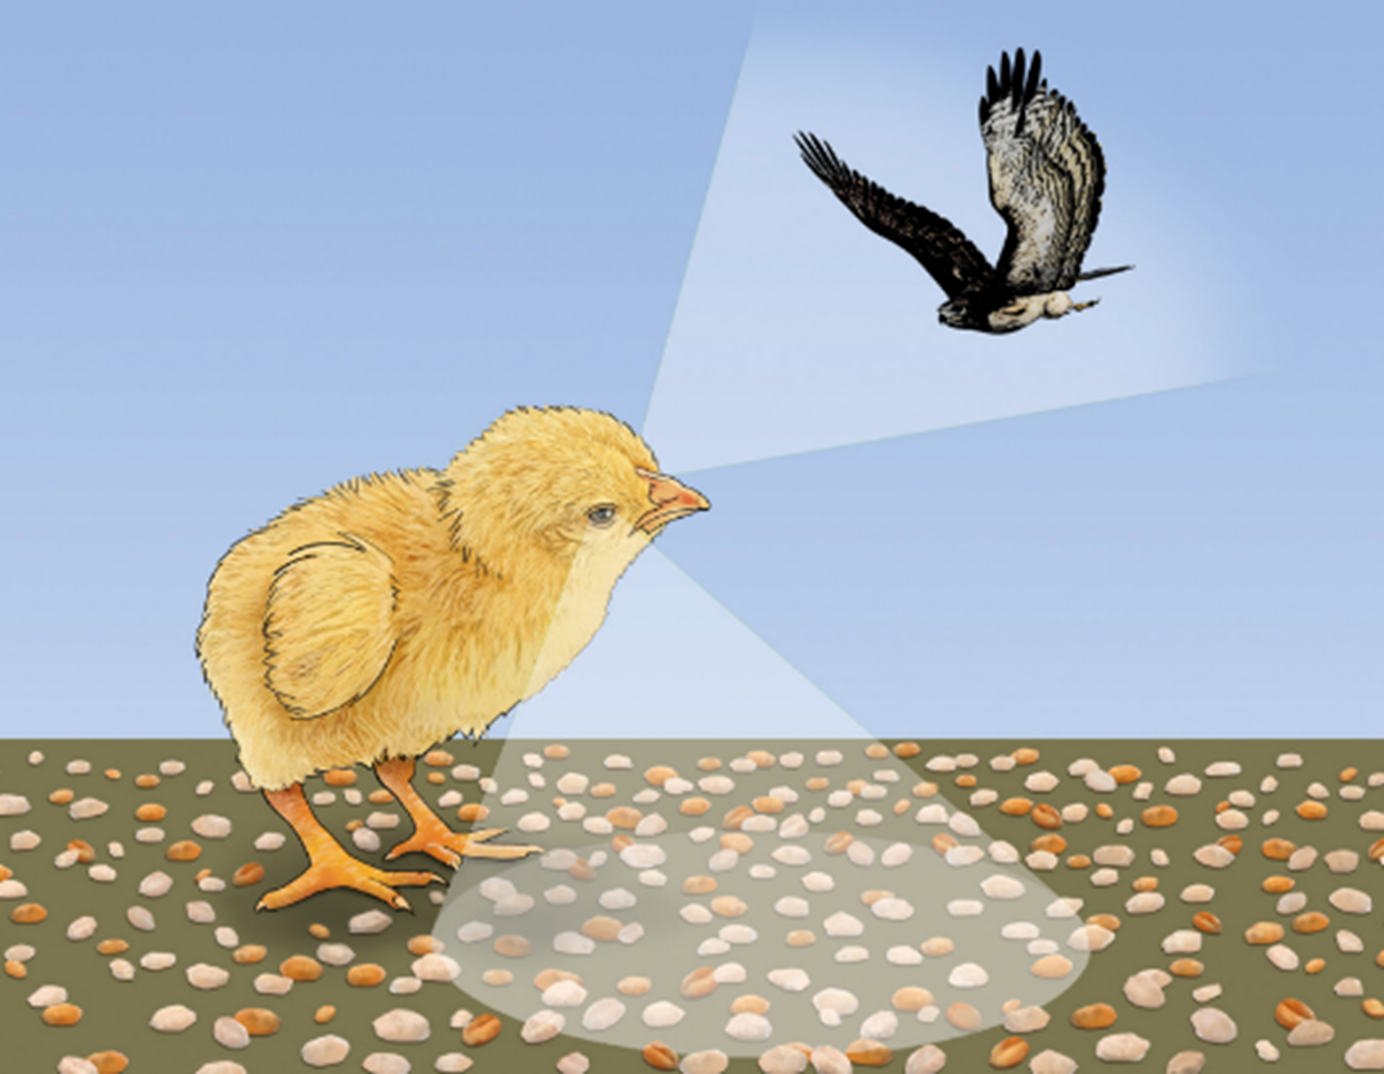 Благодаря зрительной латерализации цыплята могут параллельно выполнять две задачи: находить зернышки среди камней и одновременно следить за хищными птицами, пролетающими над цыпленком